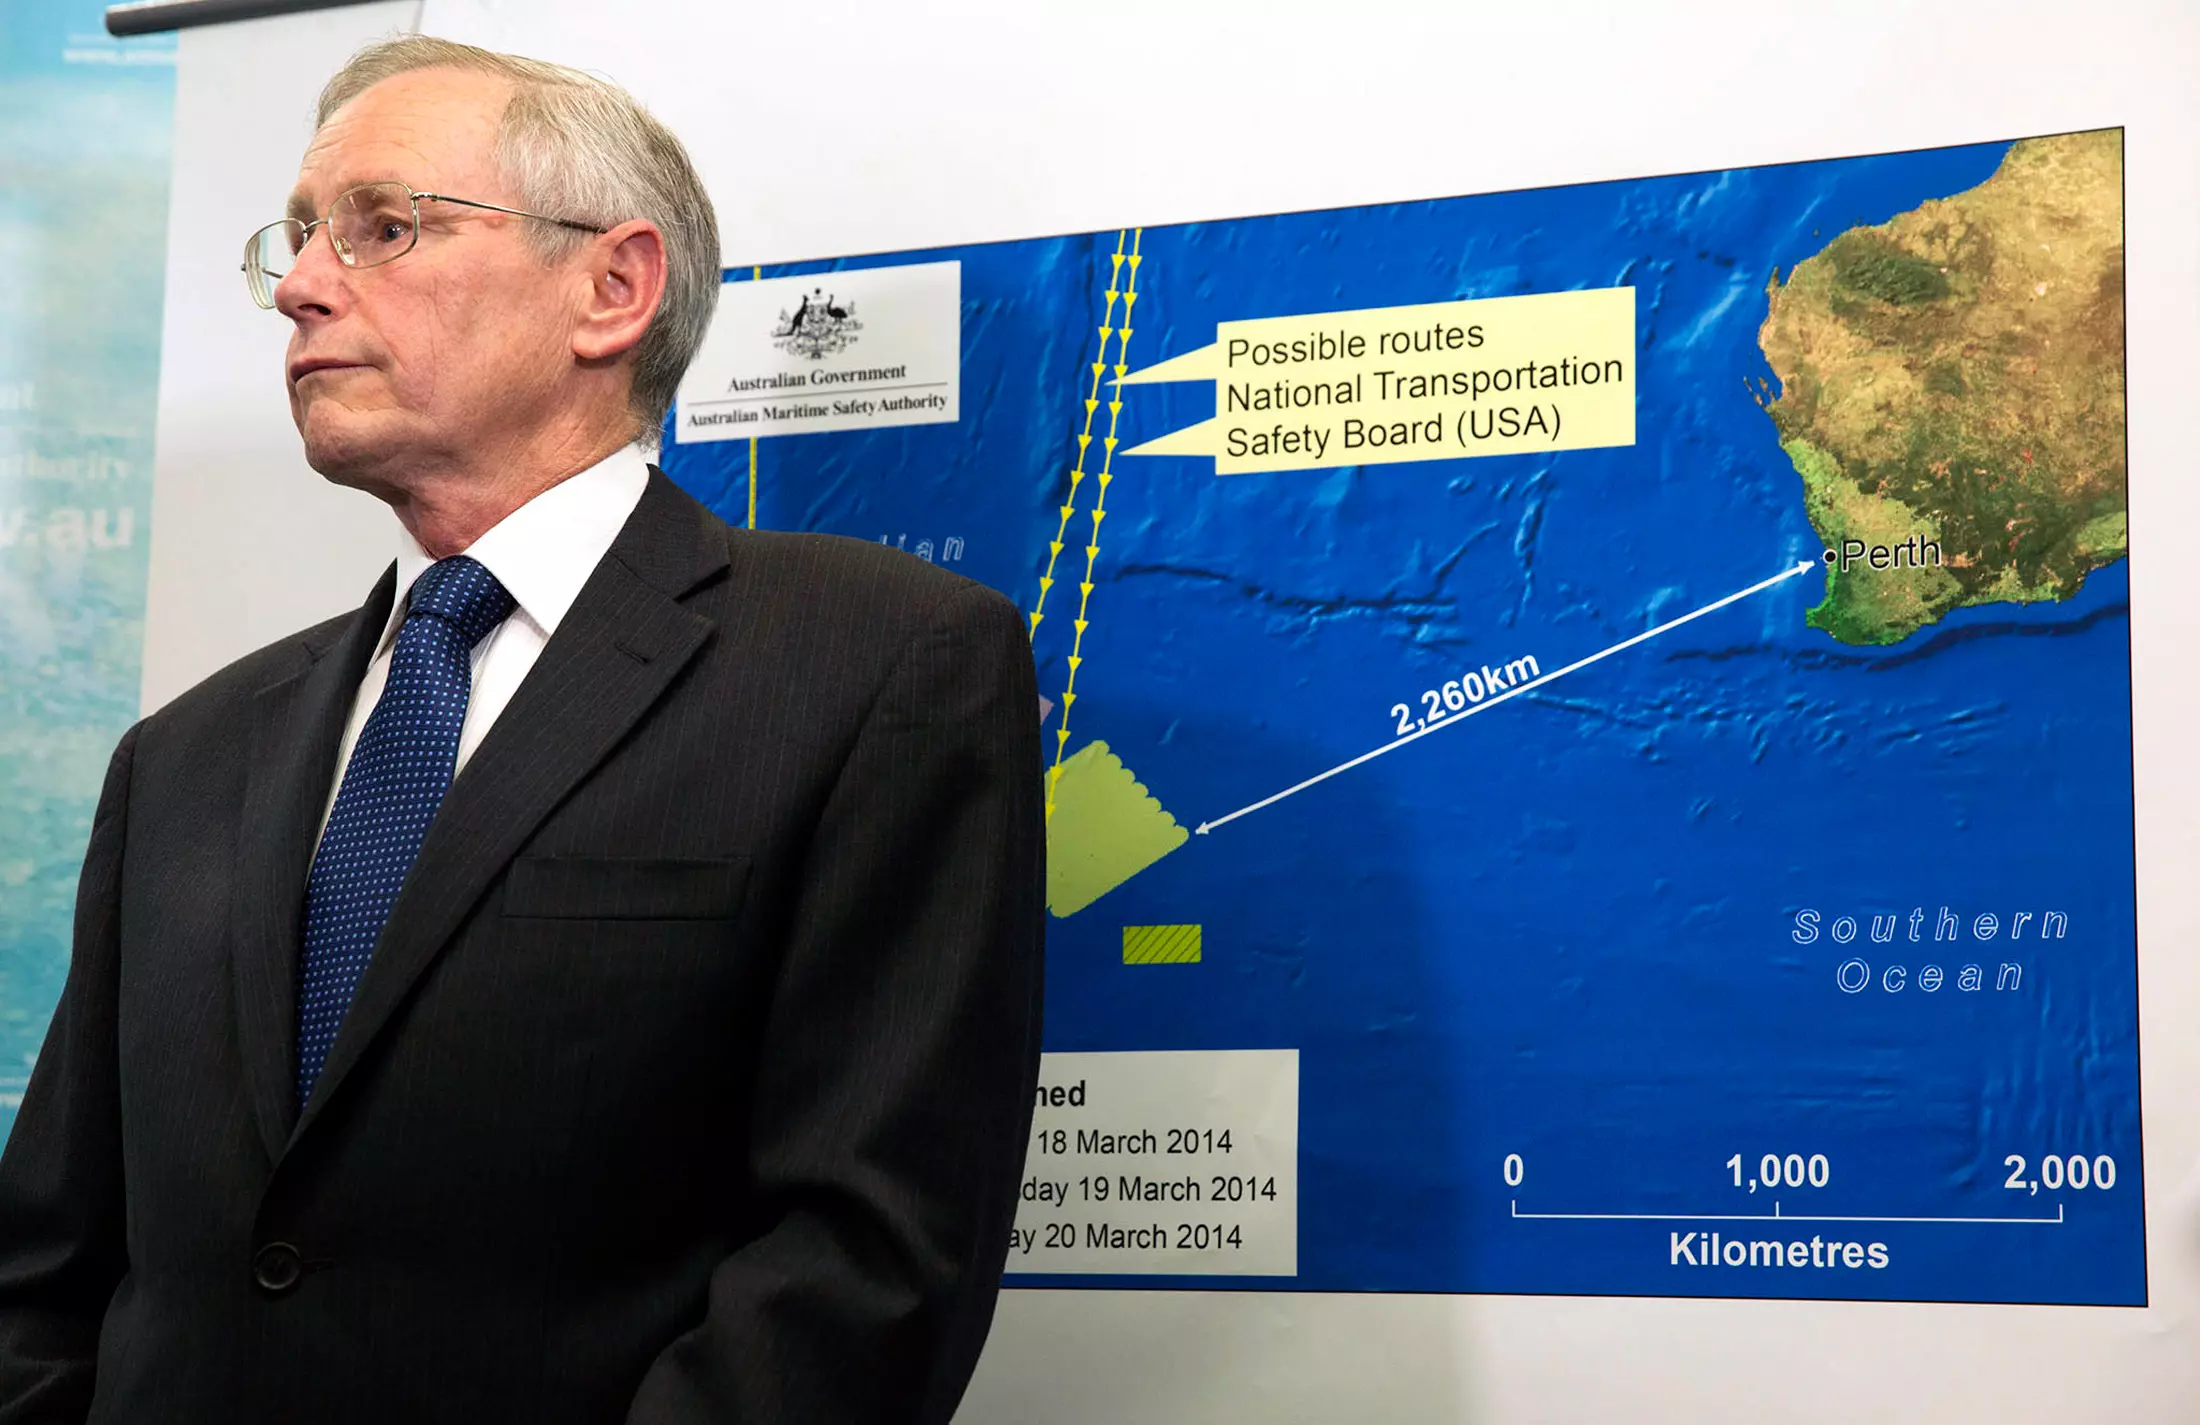 ג'ון יאנג מהרשות לבטיחות ימית של אוסטרליה מודיע על הממצאים החדשים, אתמול בקנברה